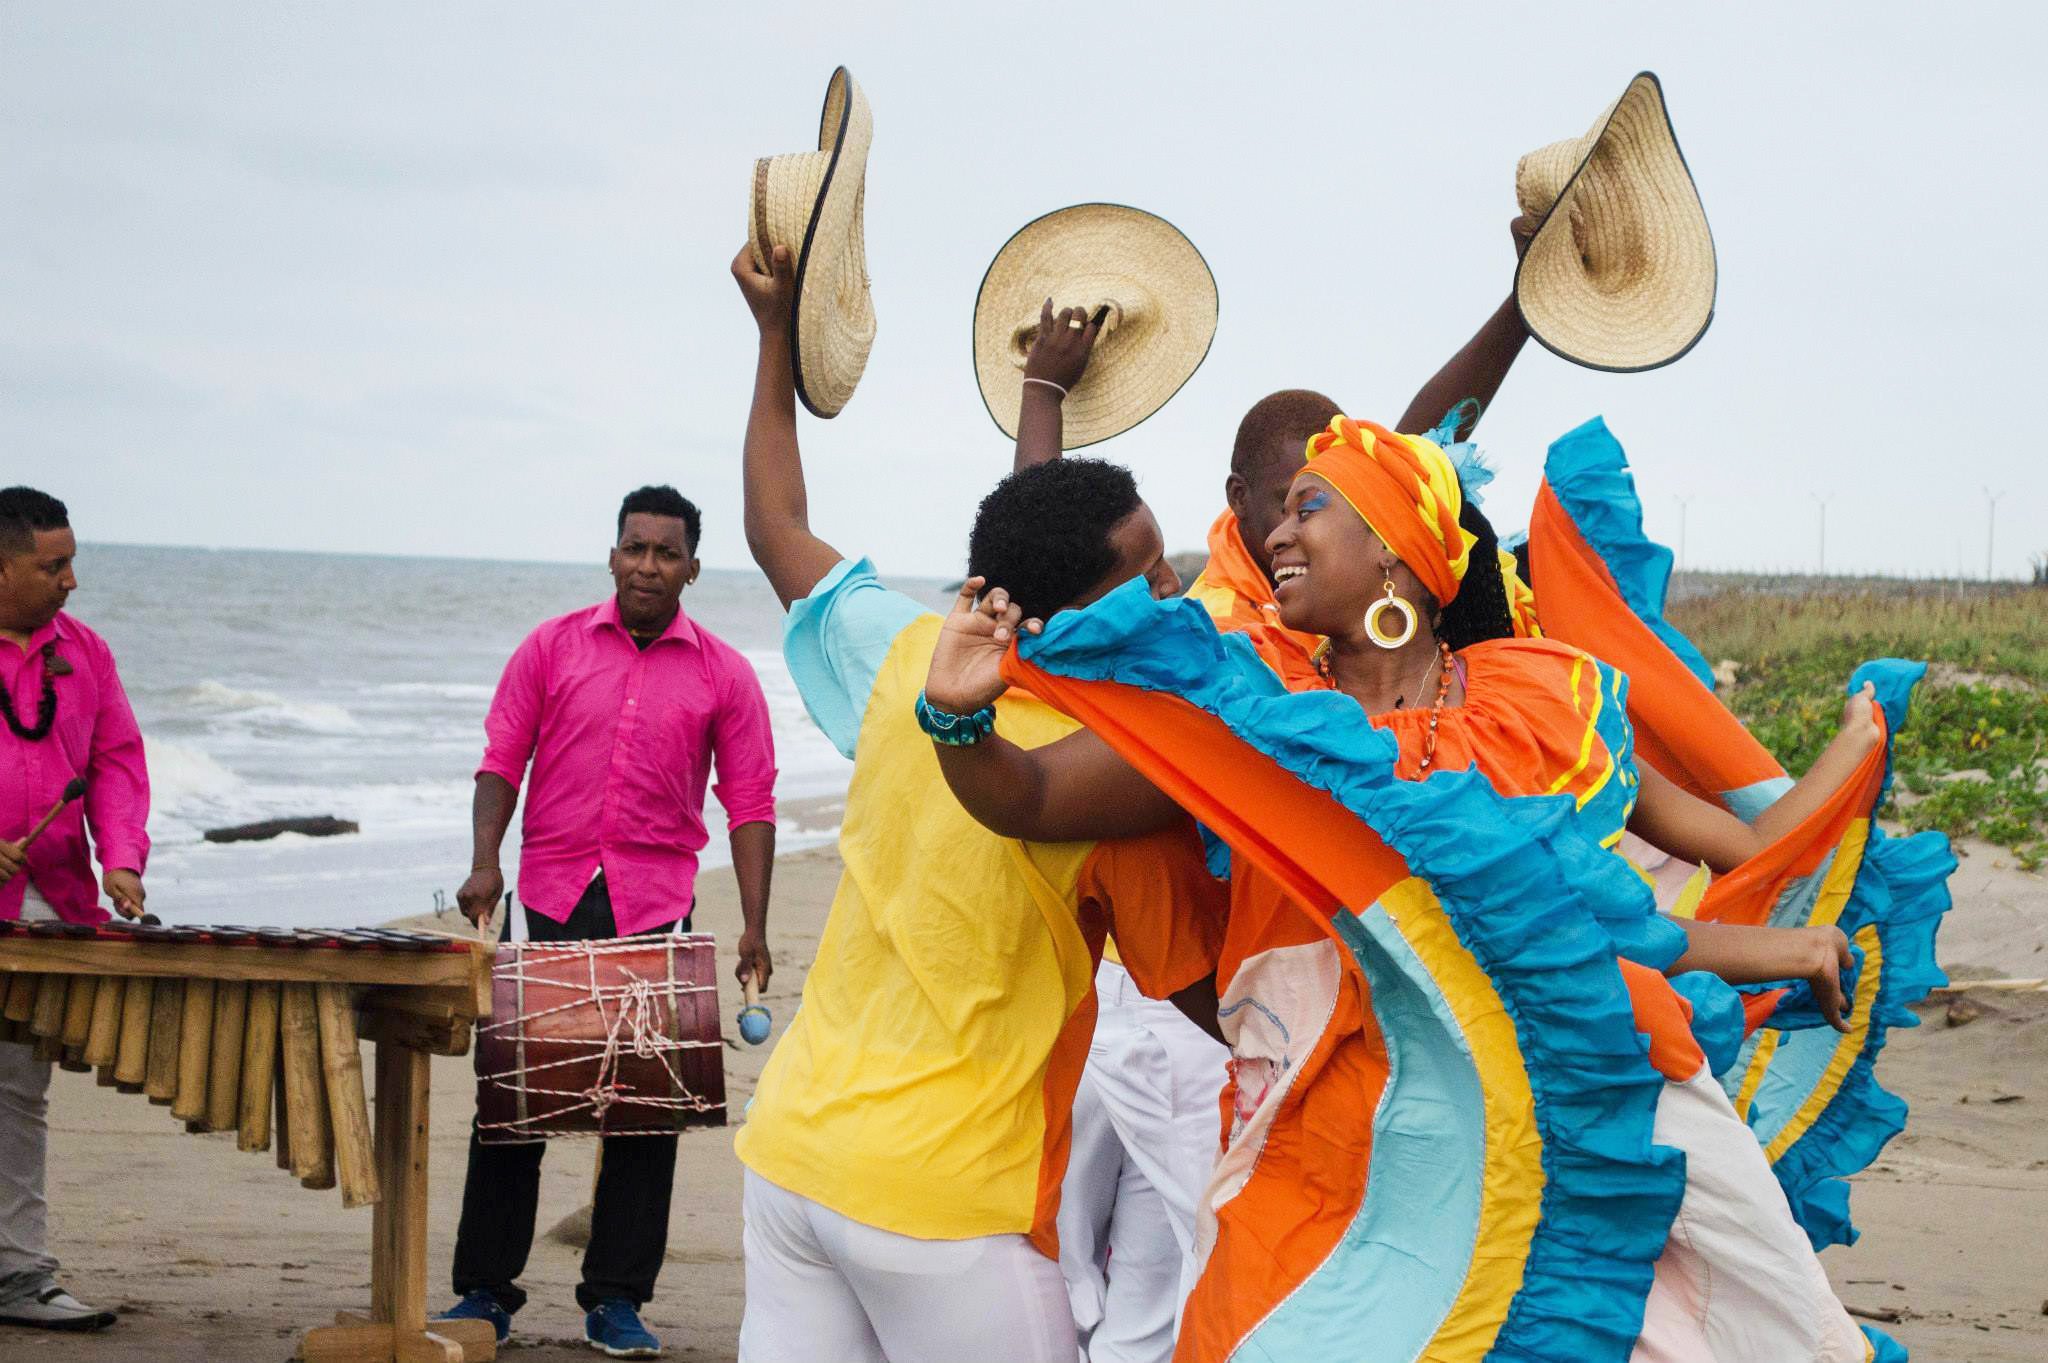 La Fiesta del Fuego está dedicada este año a la riqueza afrodescendiente de Ecuador a través de la música y danza.